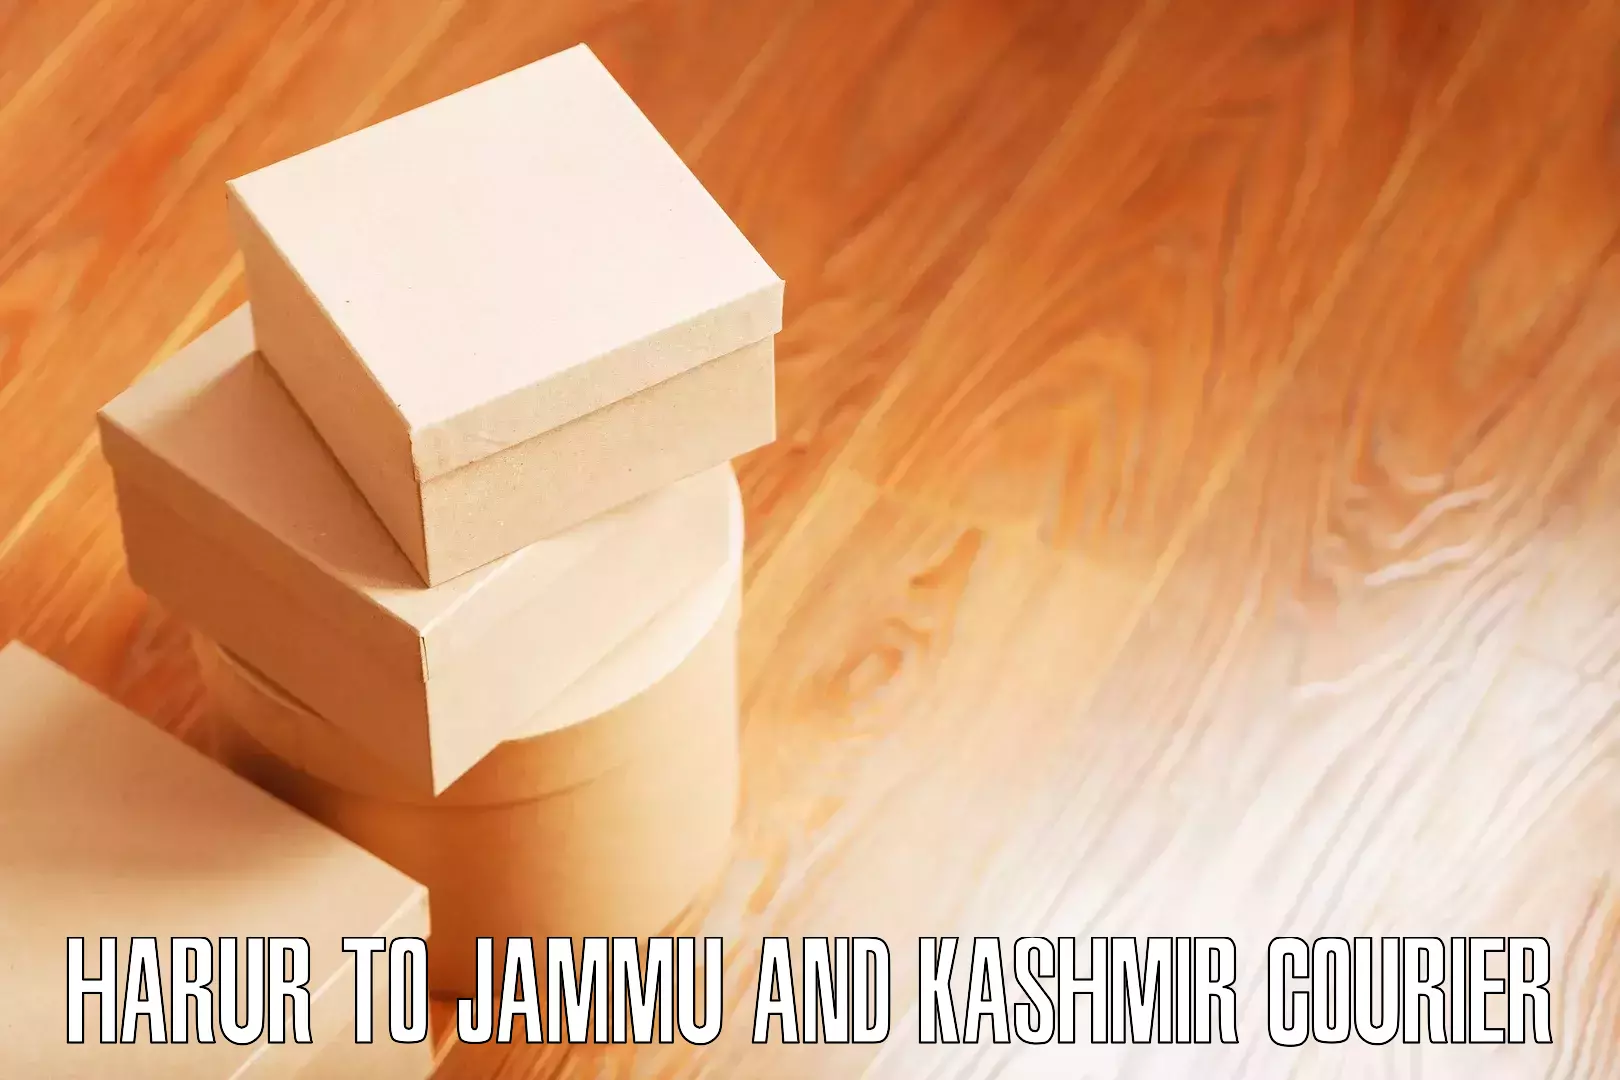 Expert goods movers Harur to Jammu and Kashmir